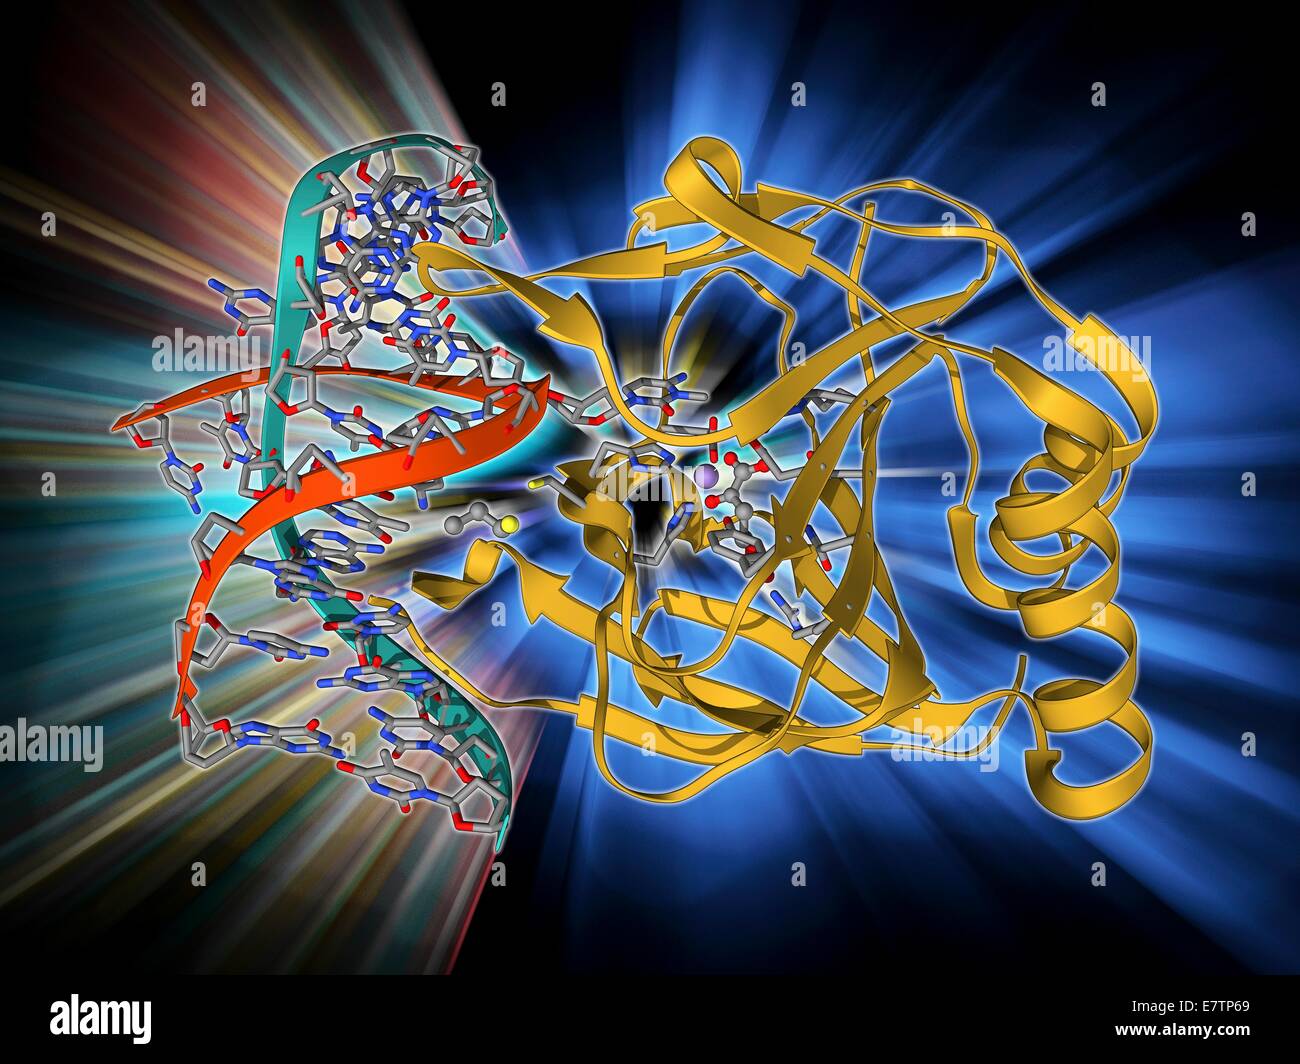 DNA-Reparaturenzym. Molekulares Modell der DNA (Desoxyribonukleinsäure) reparieren Enzym Alpha-Ketoglutarate-abhängiger Dioxygenase gebunden an ein Molekül der DNA (rot und blau). Stockfoto